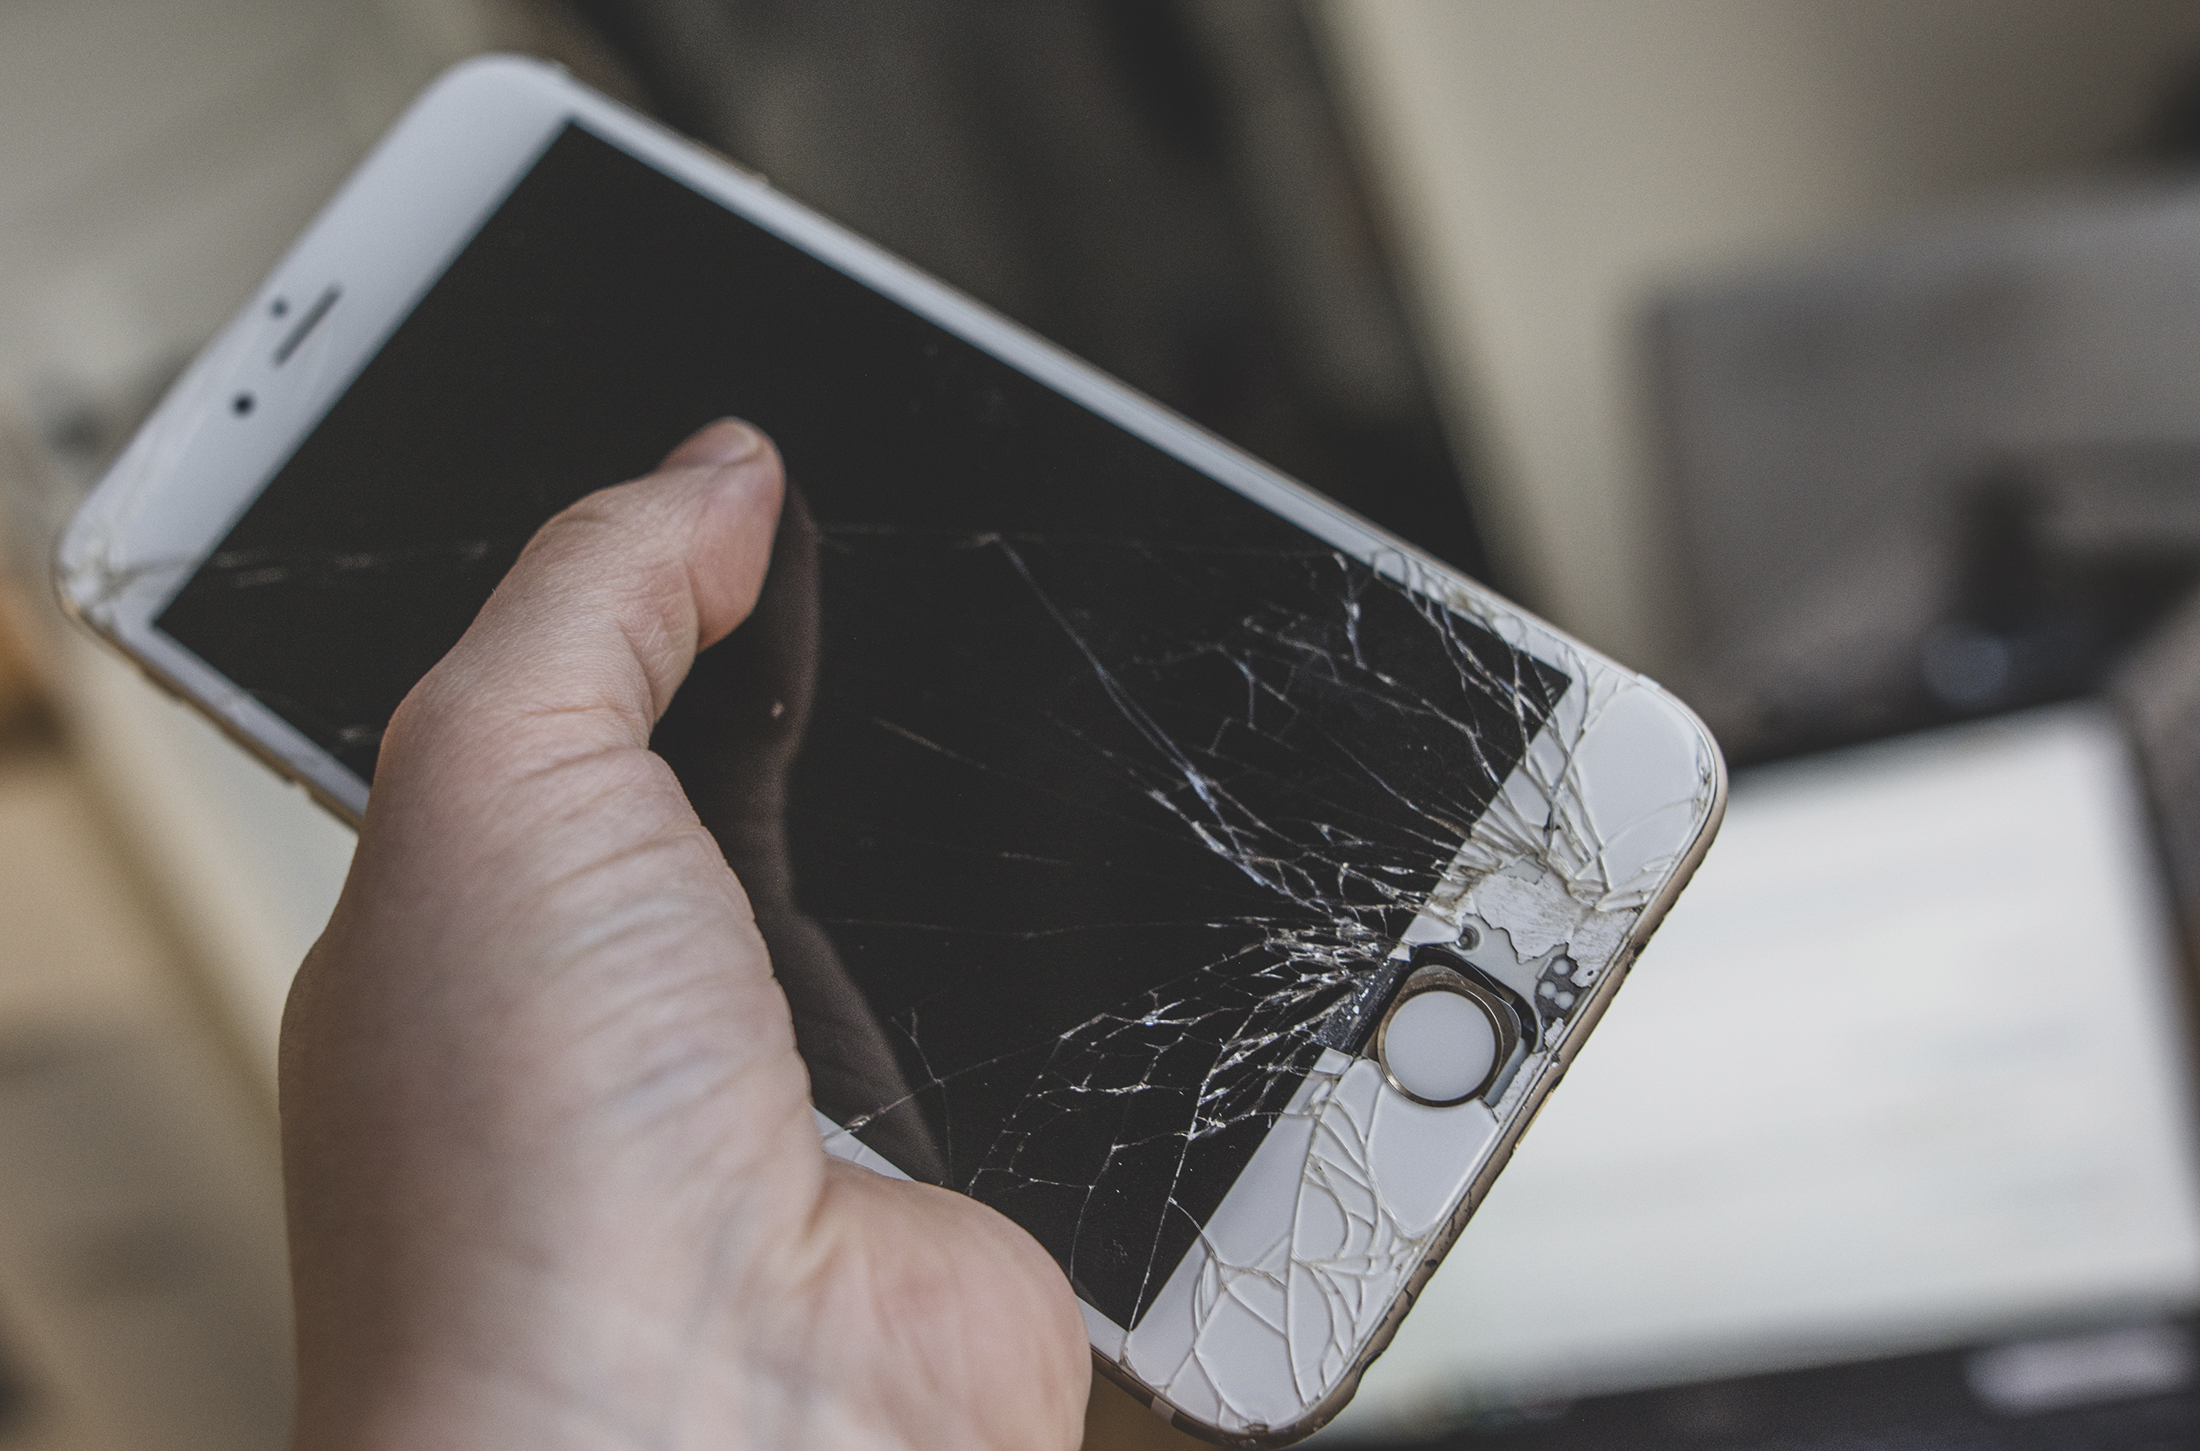 Näin vakuutusyhtiötä yritetään huijata korvausten toivossa: ”Kun iPhonesta julkaistaan uusi malli, niin vanhat tuppaavat menemään rikki”